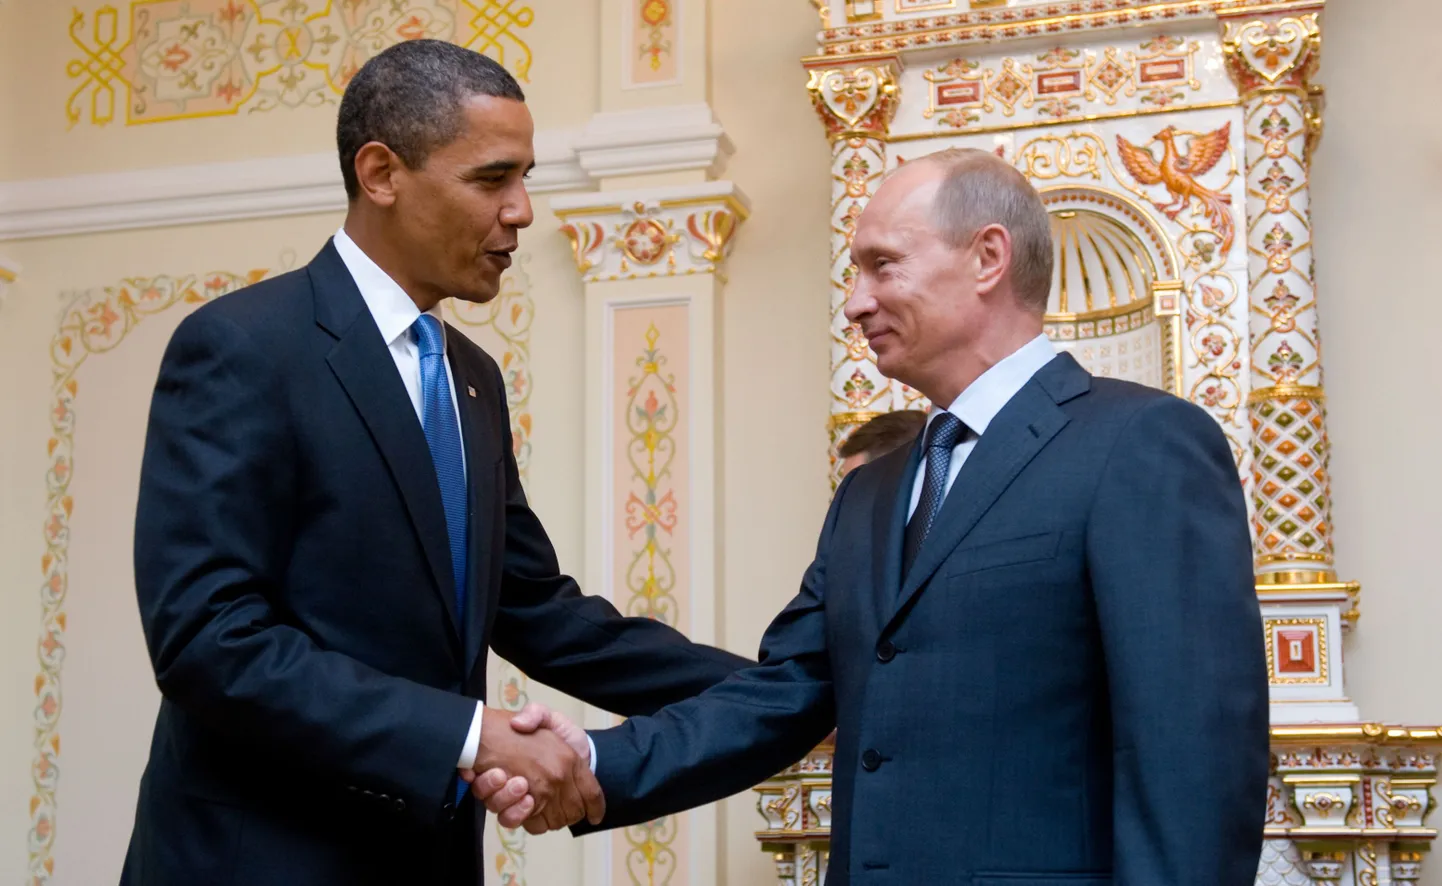 Moskvas riigivisiidil viibiv Ühendriikide president Barack Obama kohtus täna hommikul Venemaa peaministri Vladimir Putiniga.